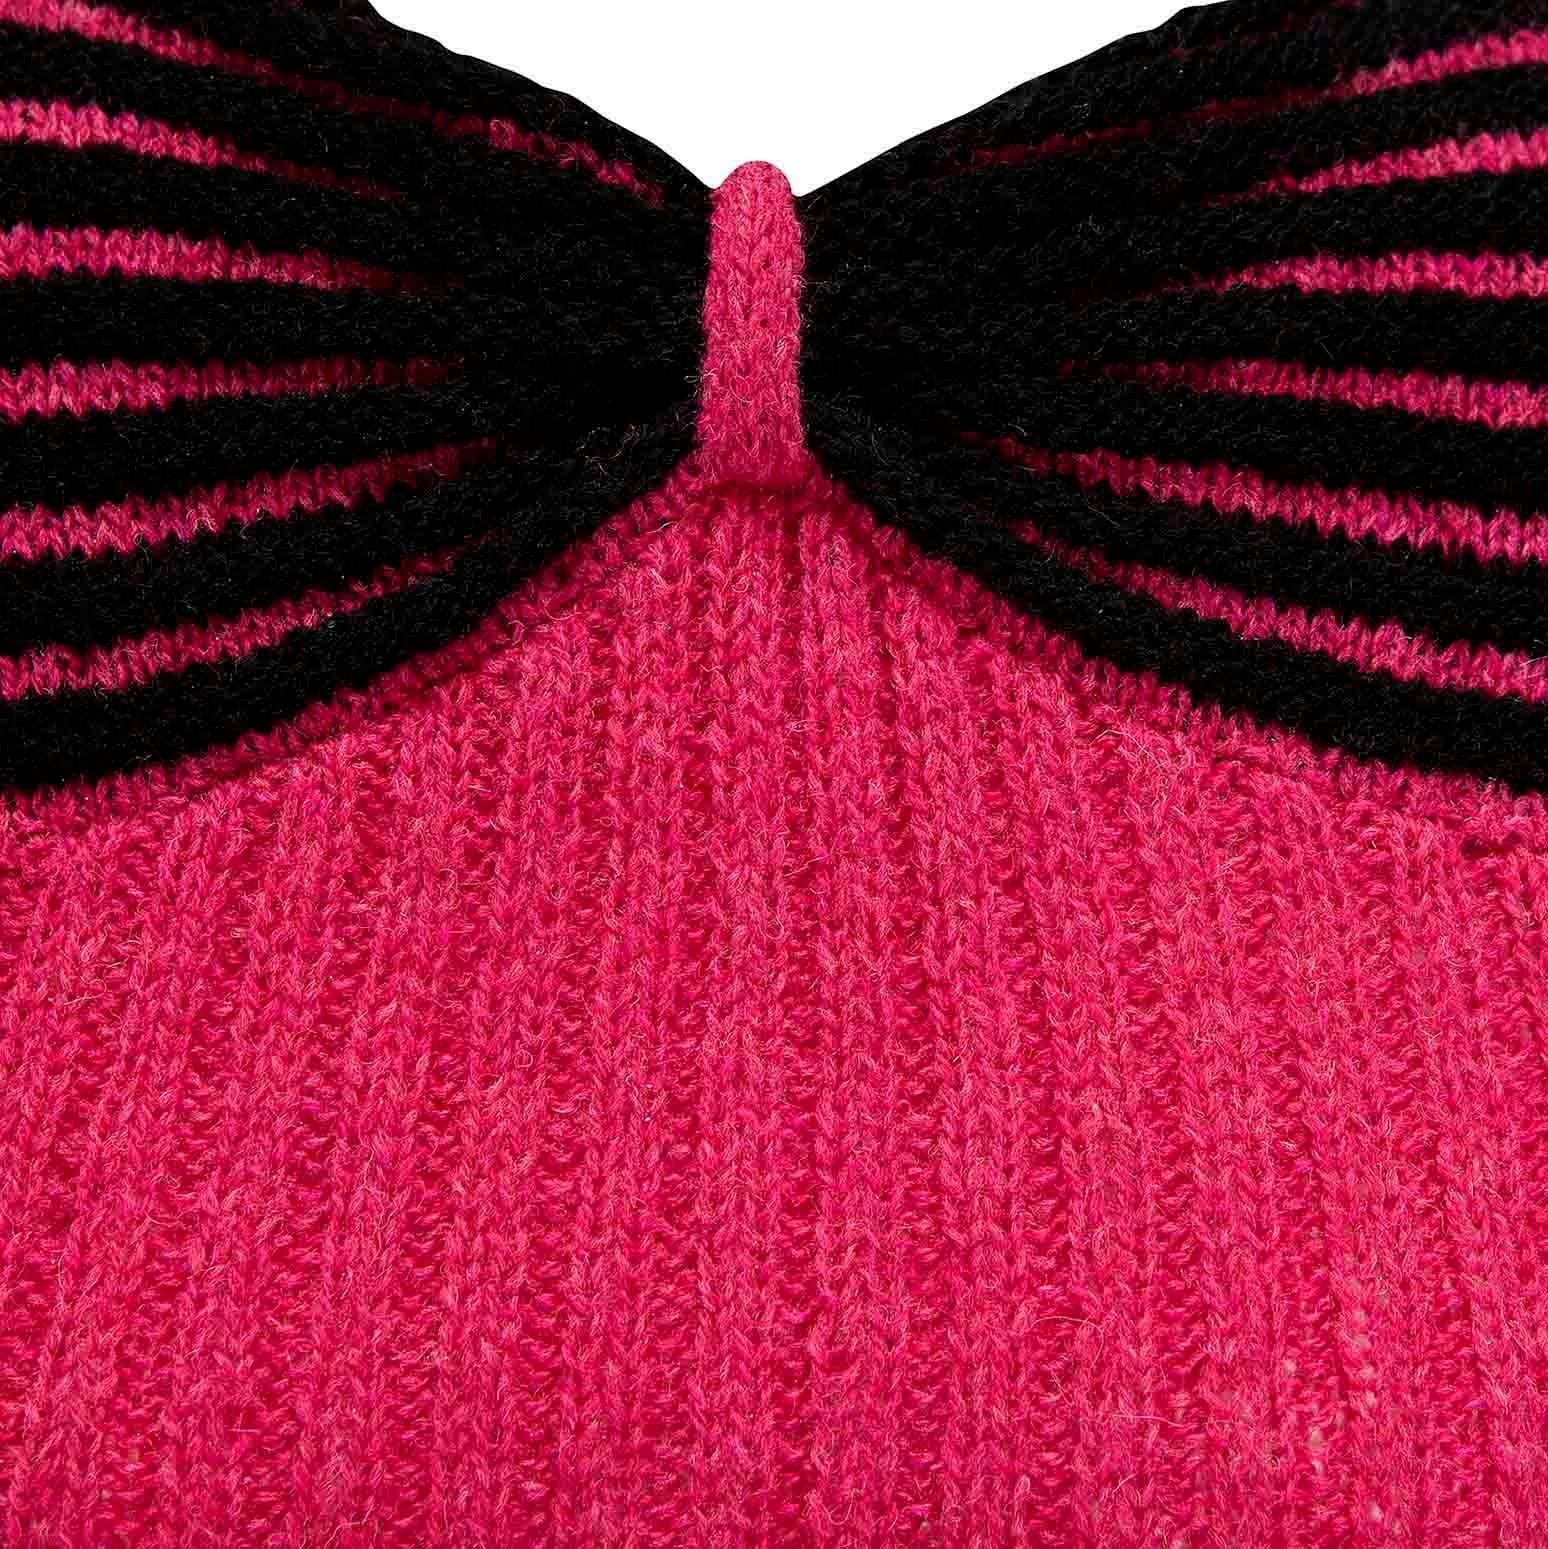 Produkt-Details: Handgestrickter Pullover - Knopfleiste auf der Rückseite - 3/4 lange Ärmel - Puffärmel - kontrastierender schwarzer Strickeffekt mit Schleife / Vorderseite des Pullovers
Label: Unbekannt
Epoche: ca. 1950
Stoff Inhalt: Wolle
Größe: